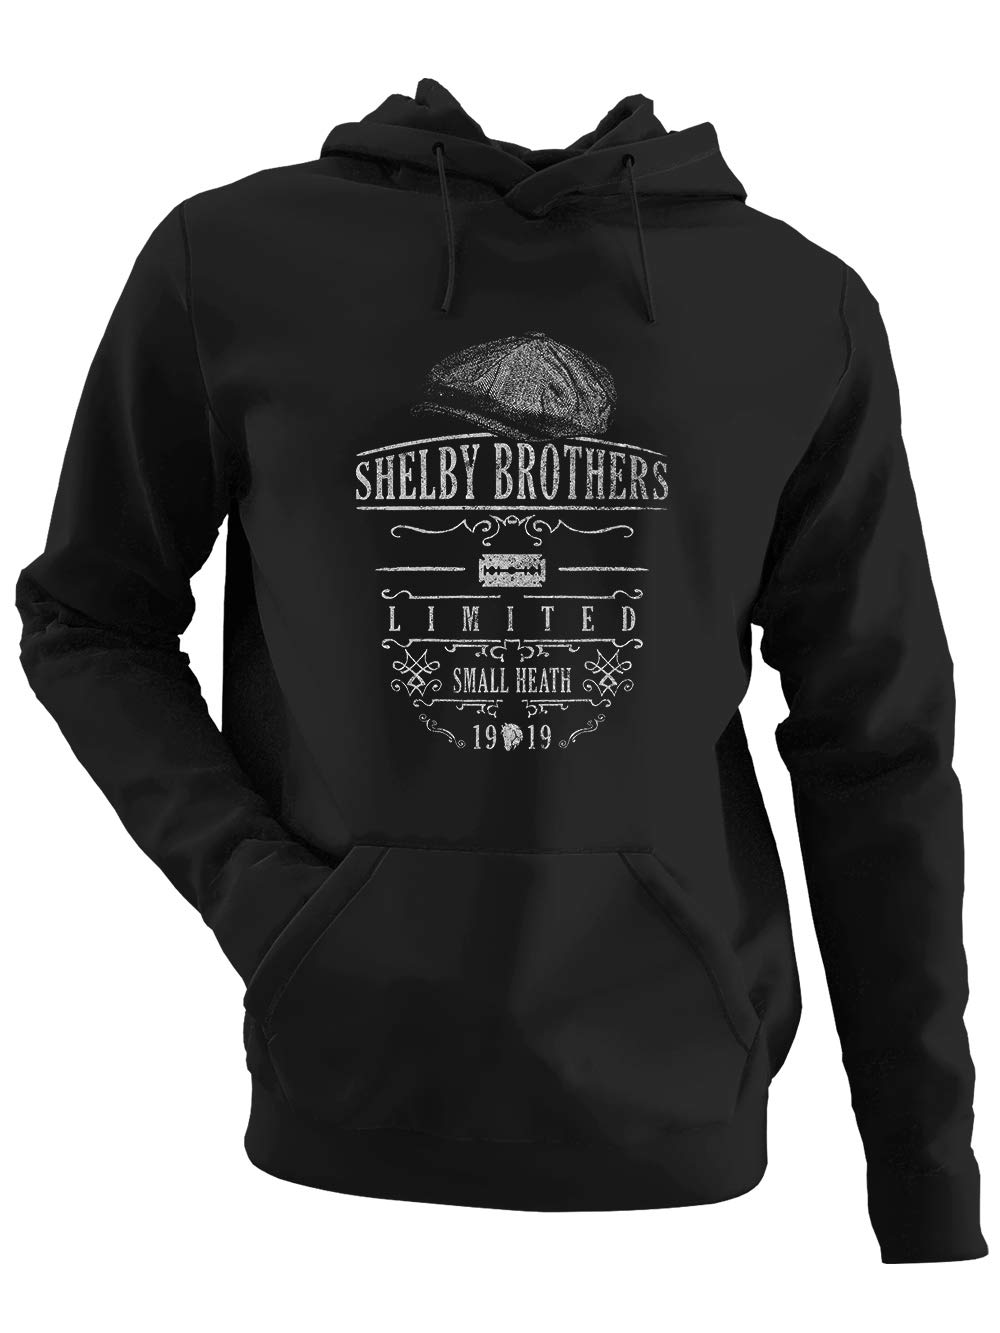 clothinx Peaky Blinders Shelby Brothers Limited | Gangs of Birmingham Design - ideal Für Serien-Fans | Versüß dir die Wartezeit auf die Neue Staffel Herren Kapuzen-Pullover Schwarz Gr. L